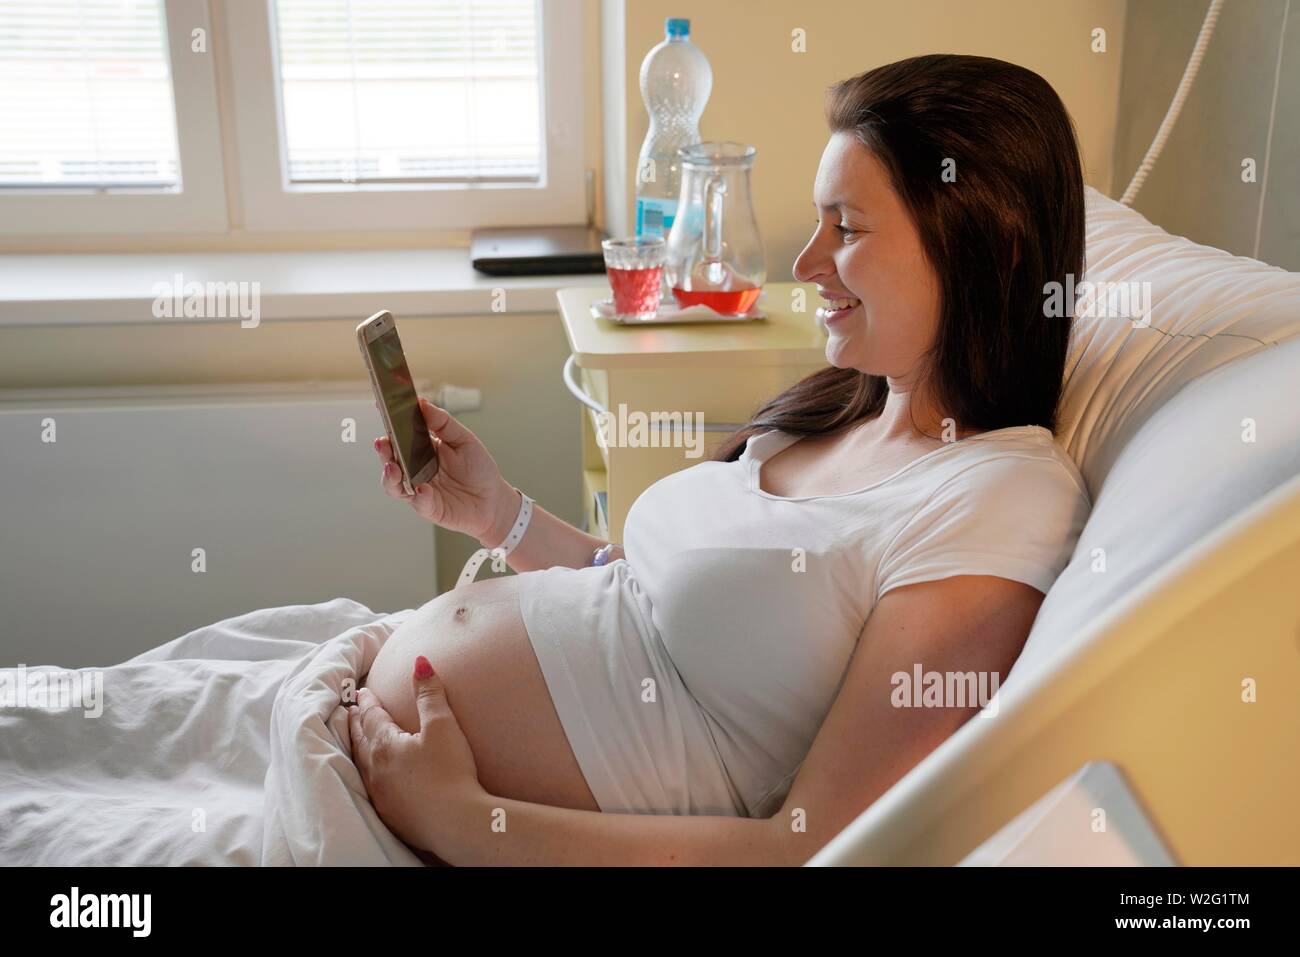 Risque de grossesse, femme enceinte, allongé sur un lit à l'hôpital à la livraison à un téléphone mobile, Karlovy Vary, République Tchèque Banque D'Images